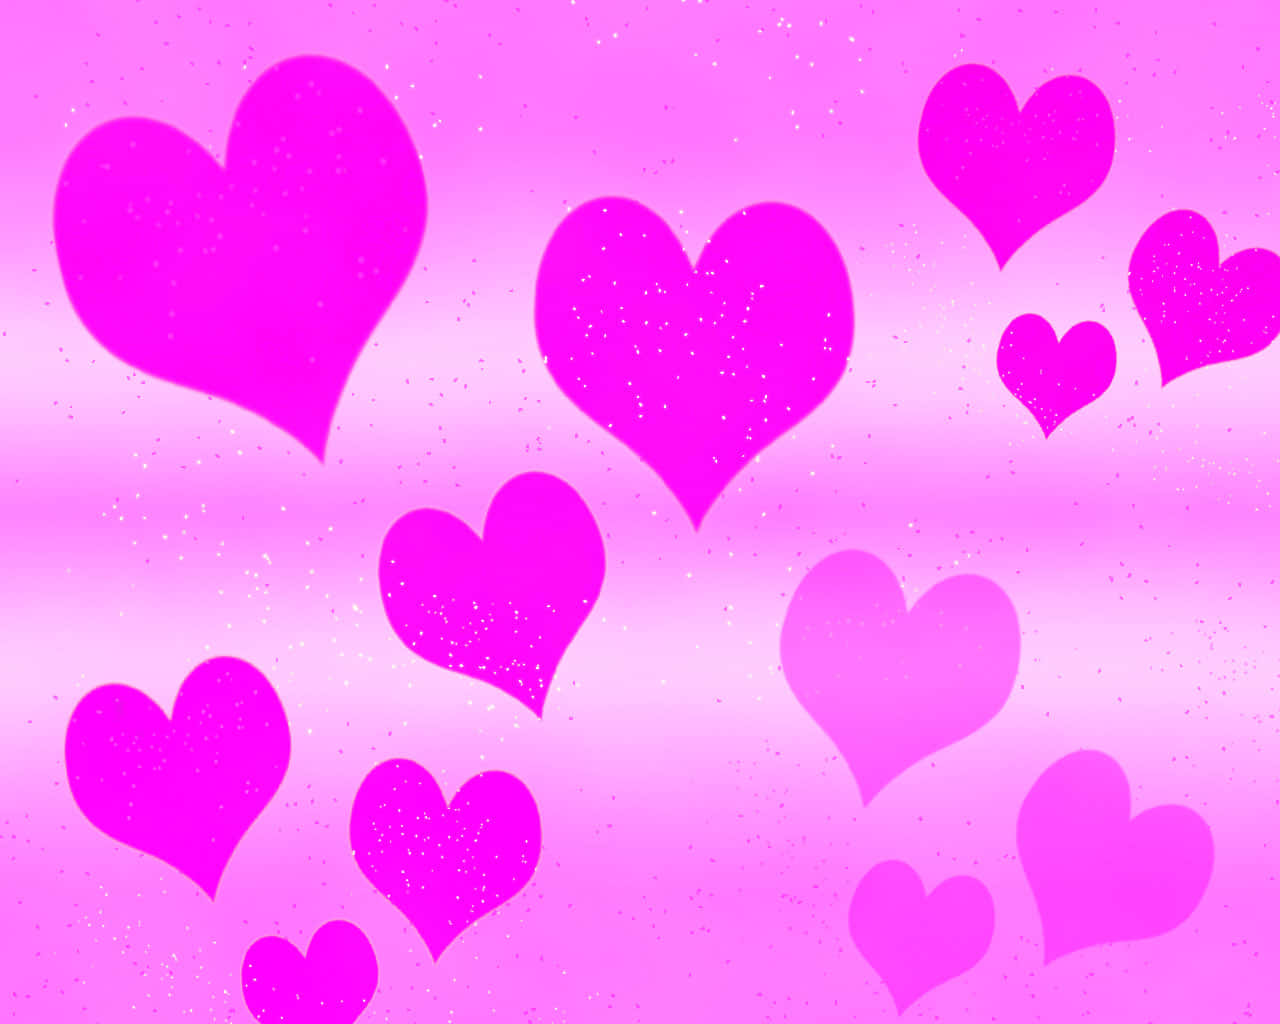 Søde glitrende pink hjerter flytter sig på dit skrivebord. Wallpaper